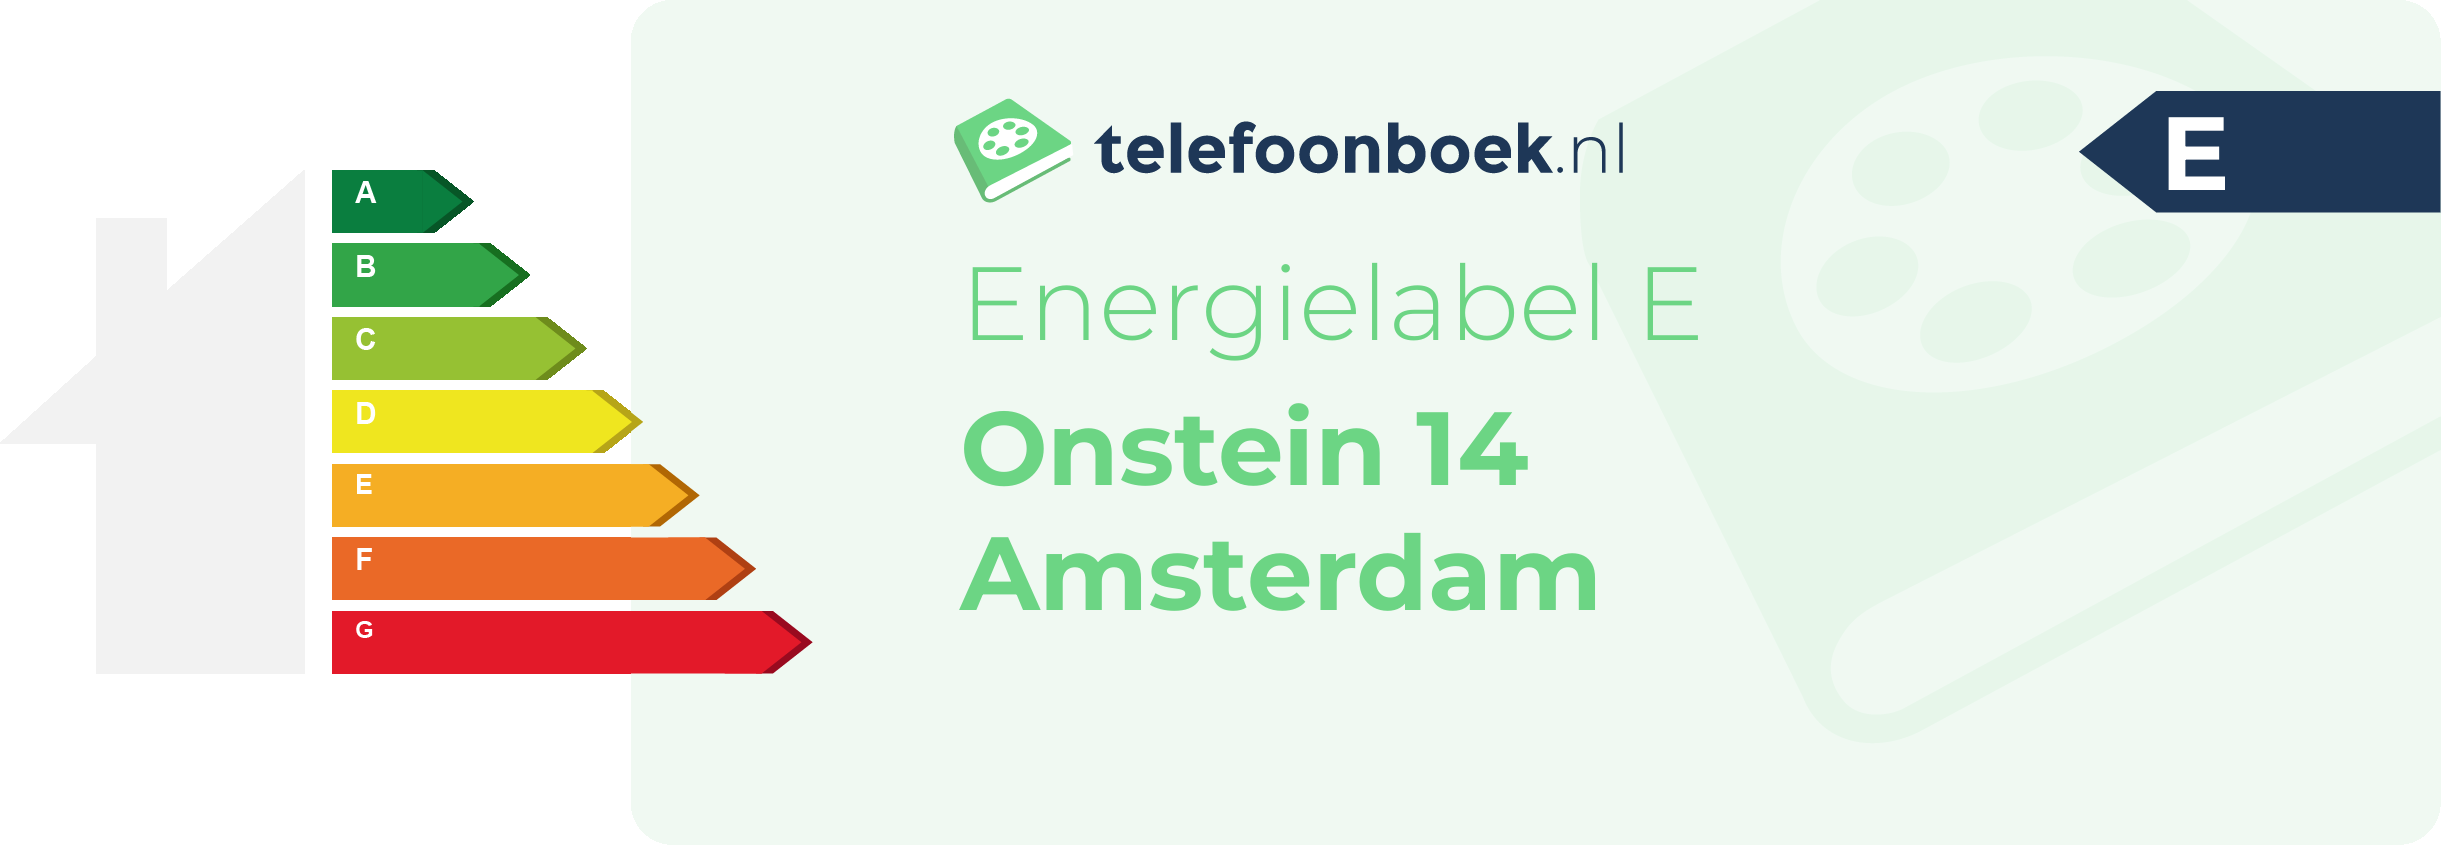 Energielabel Onstein 14 Amsterdam